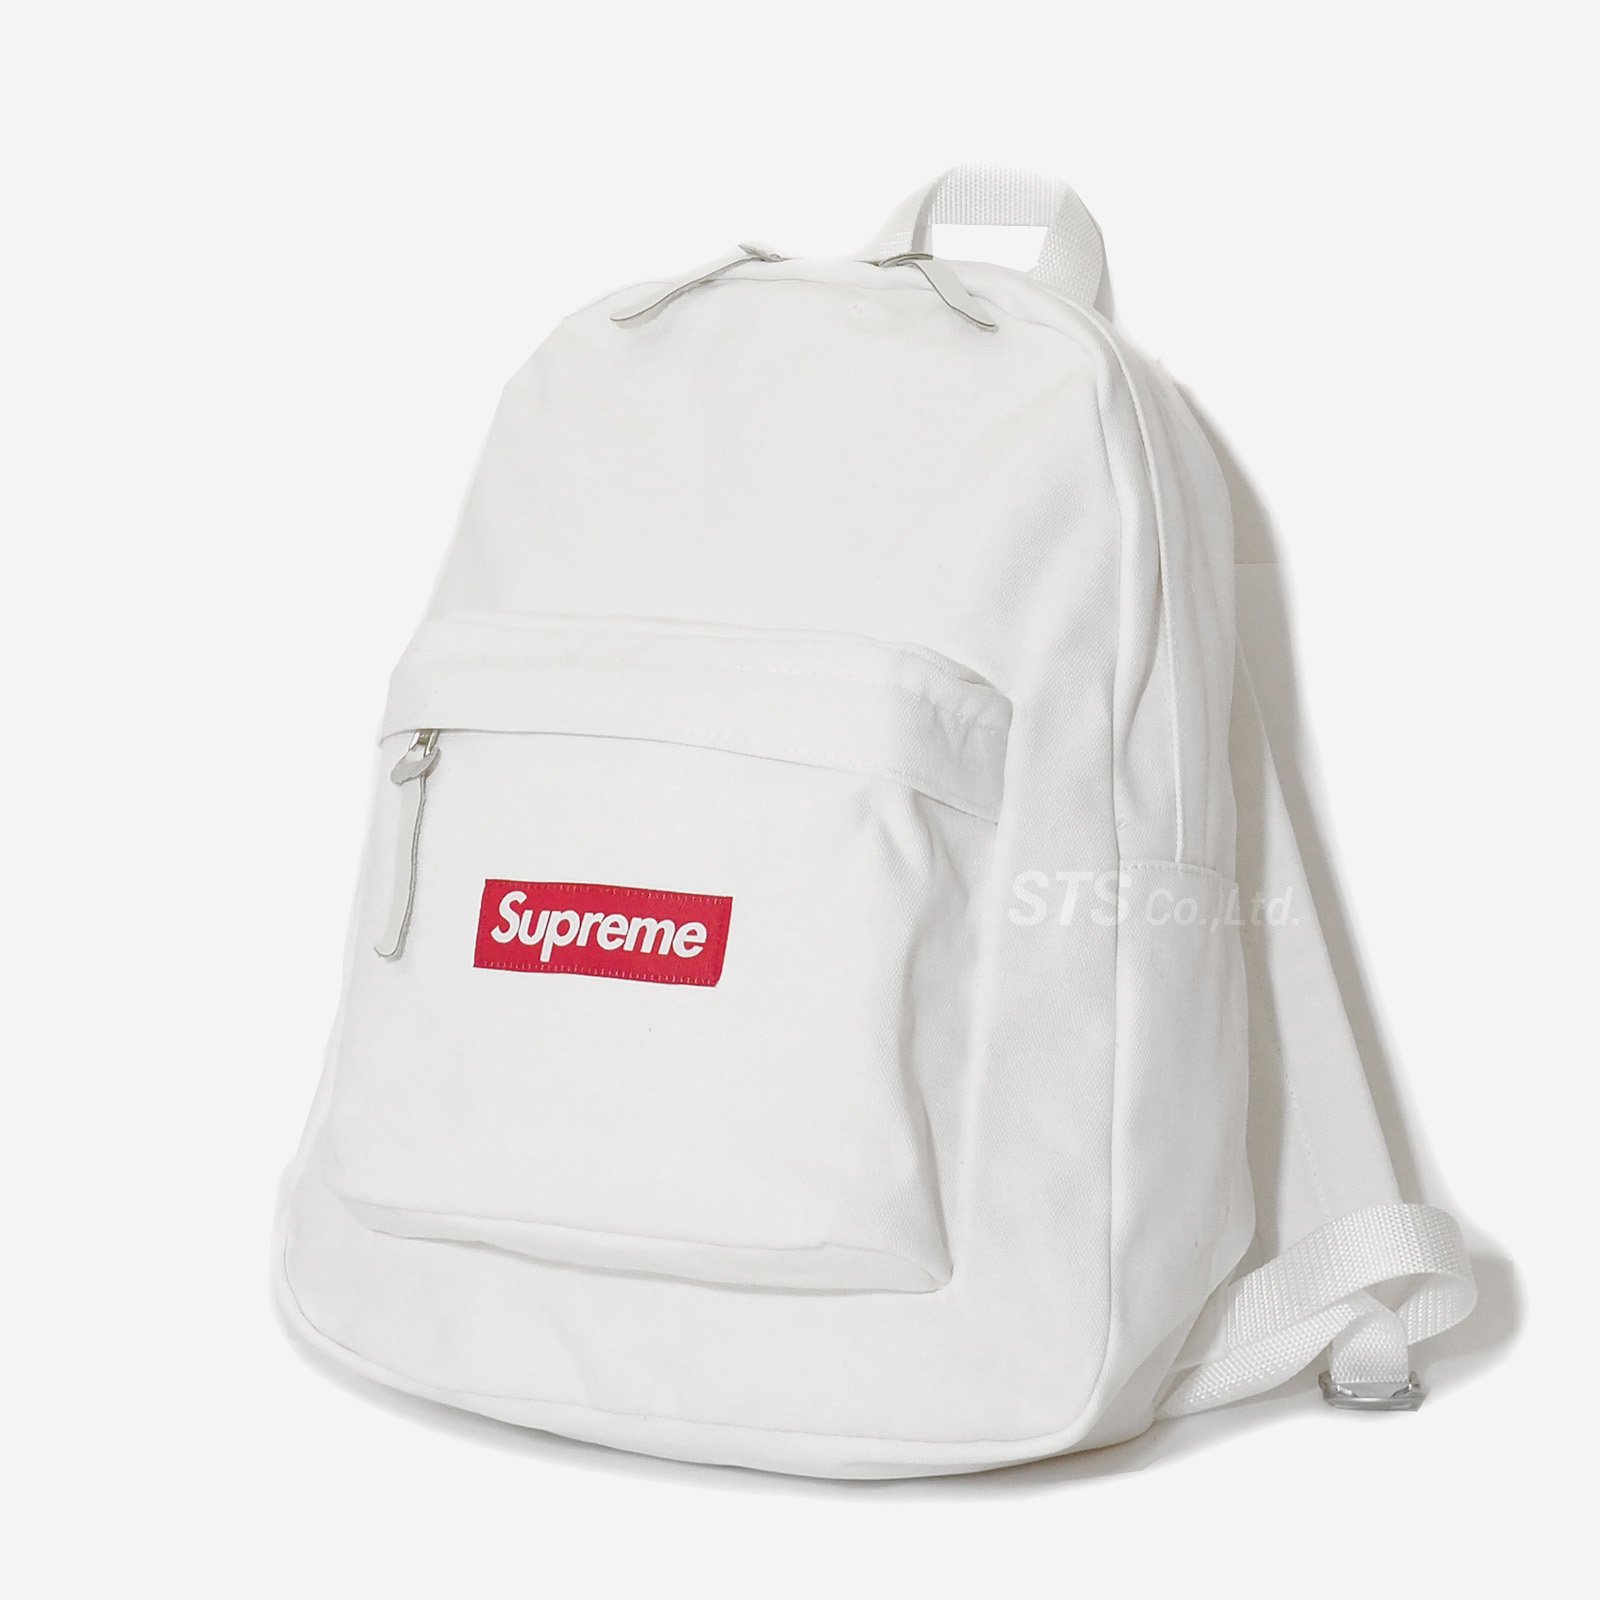 Supreme - Canvas Backpack - ParkSIDER